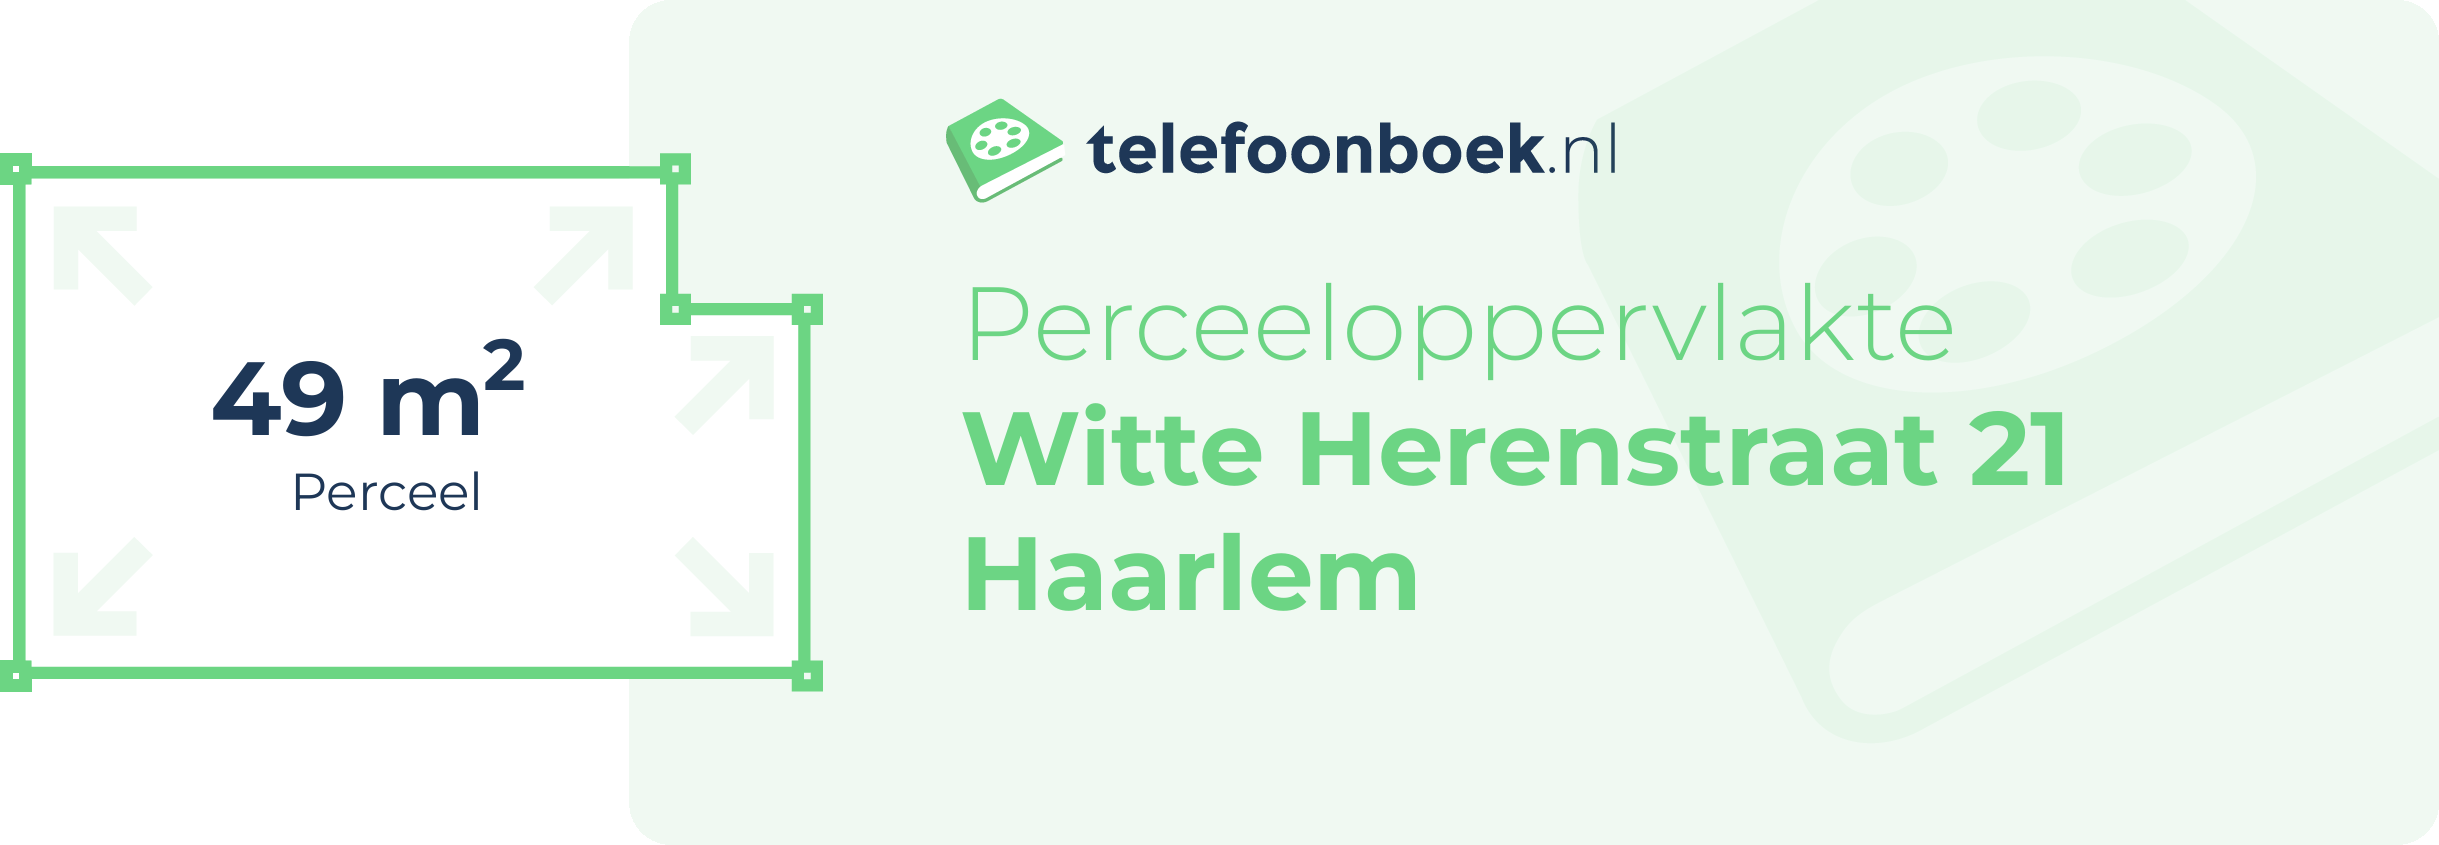 Perceeloppervlakte Witte Herenstraat 21 Haarlem